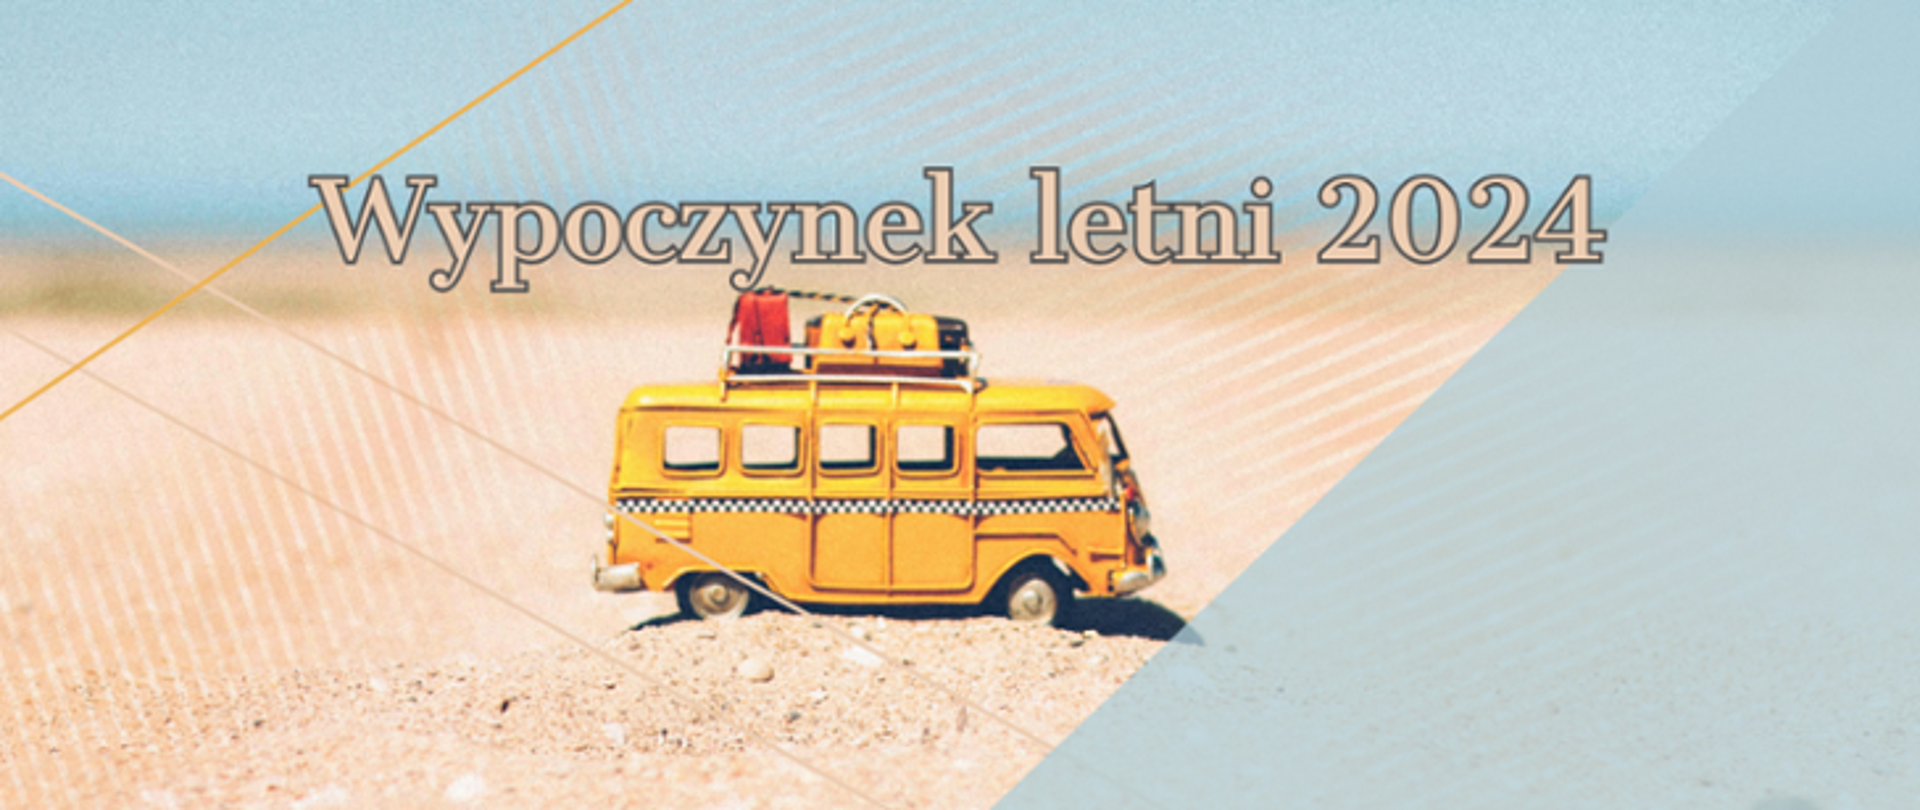 Infografika zawiera napis "Wypoczynek letni 2024" oraz zdjęcie mini-autobusa na piasku